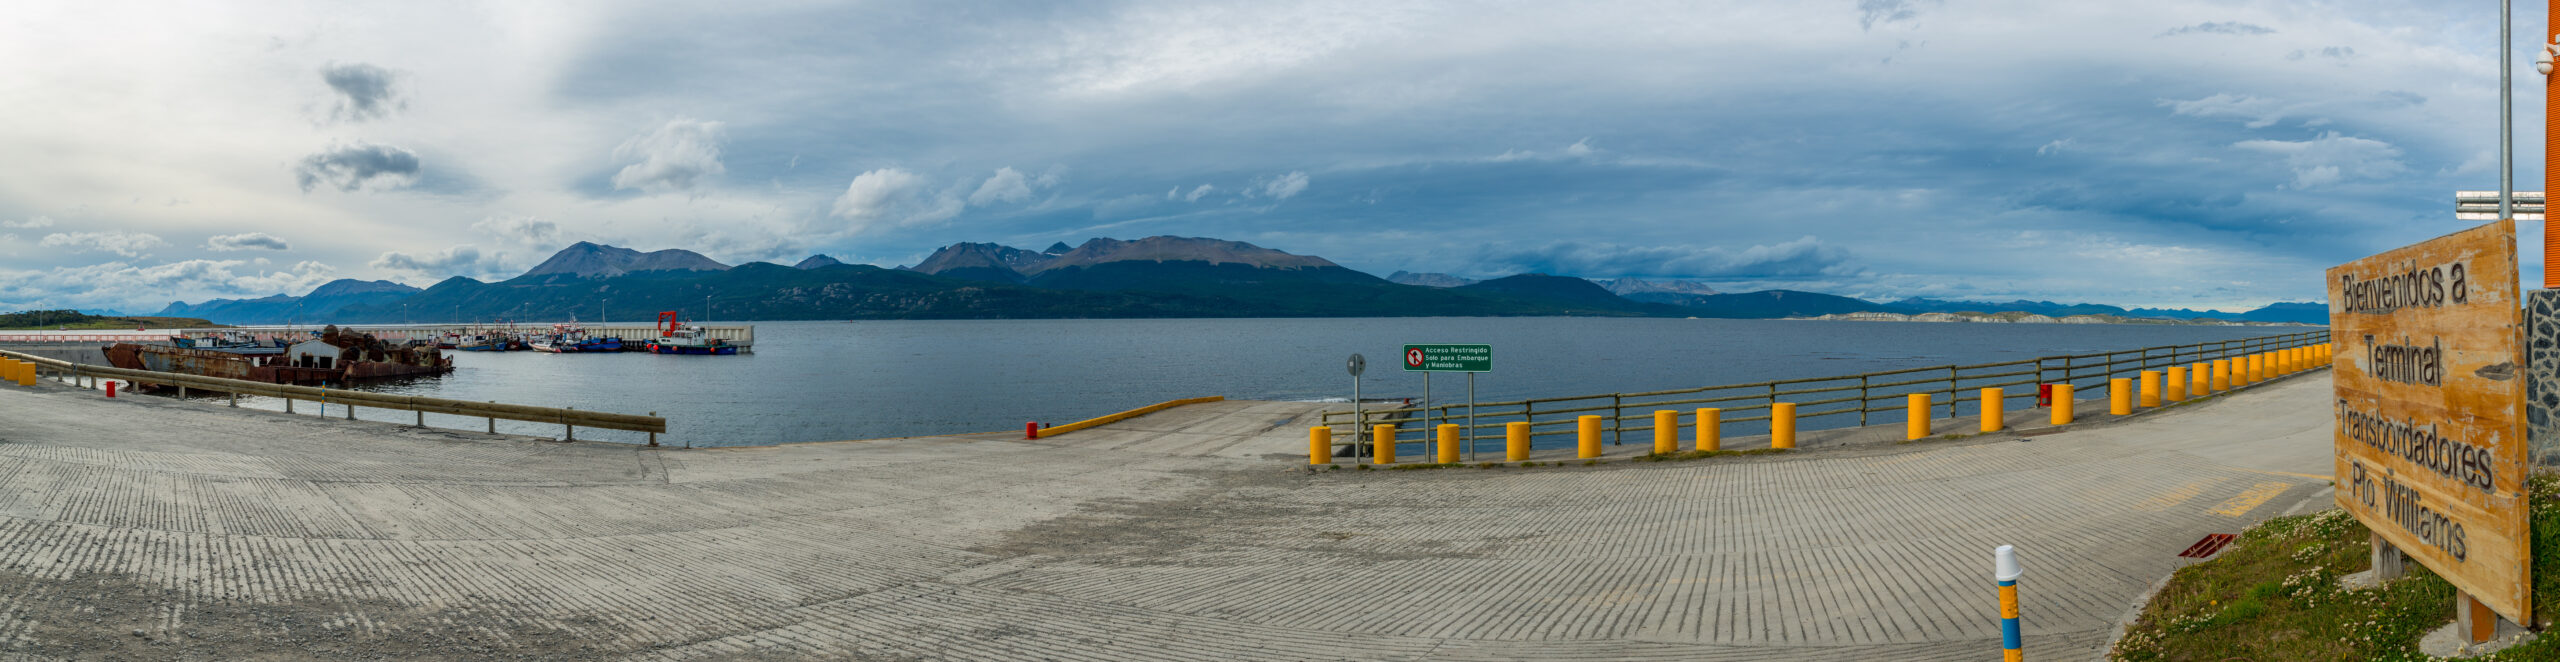 Puerto Williams, Tierra del Fuego, Chile